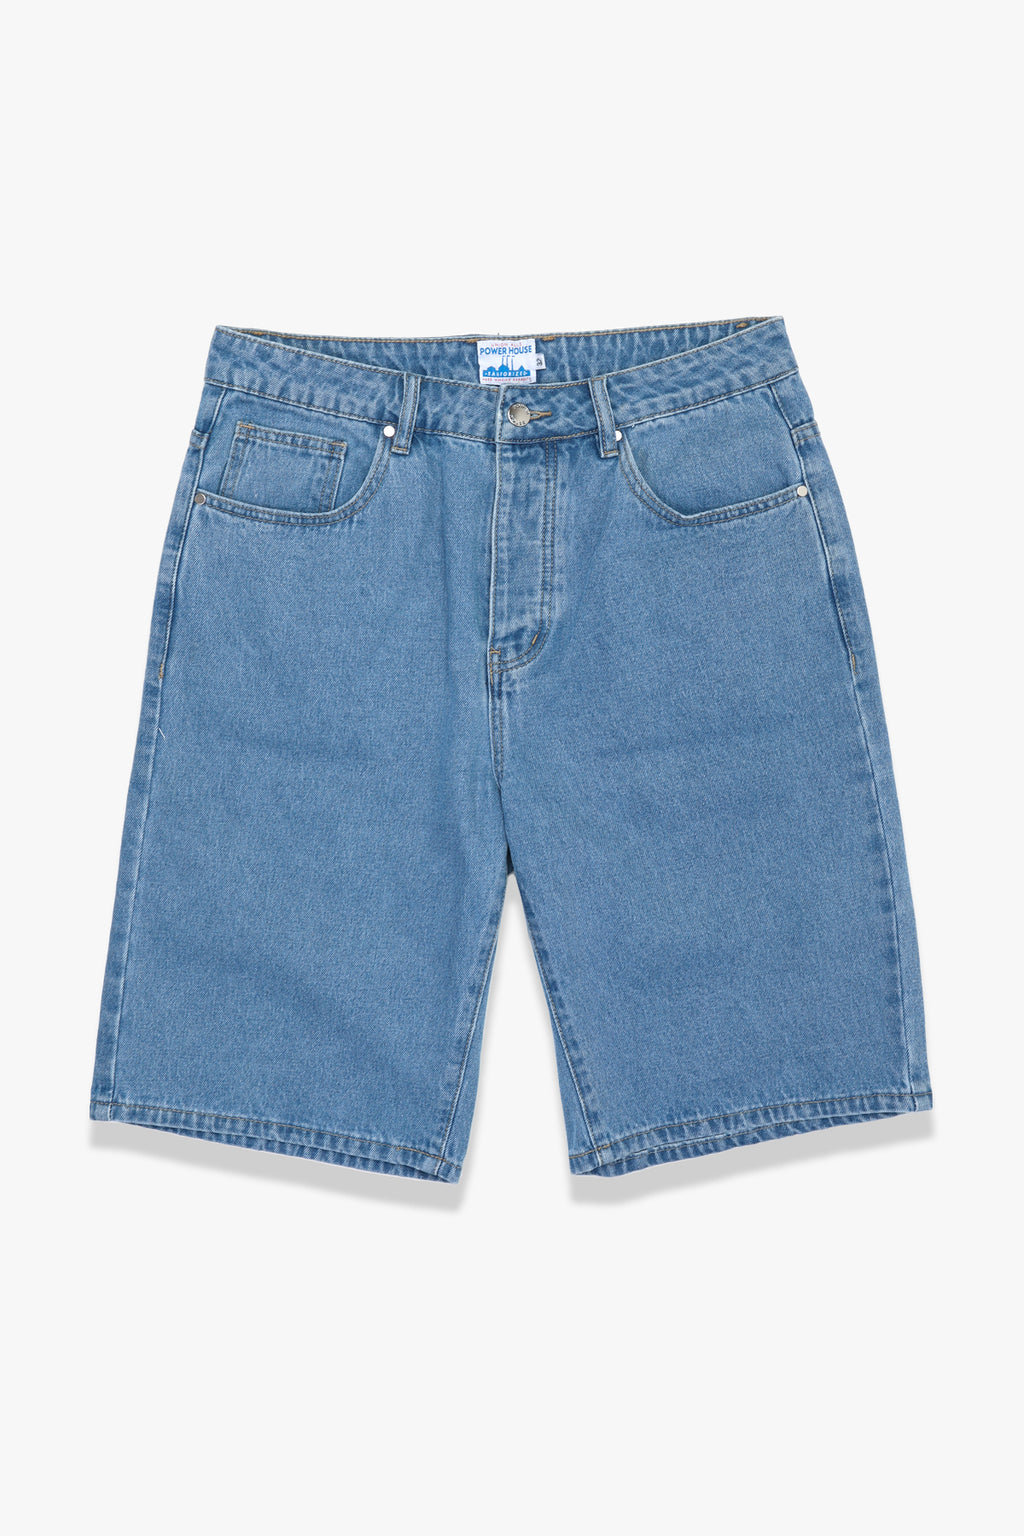 Power House - 90's Denim Shorts - Washed Blue